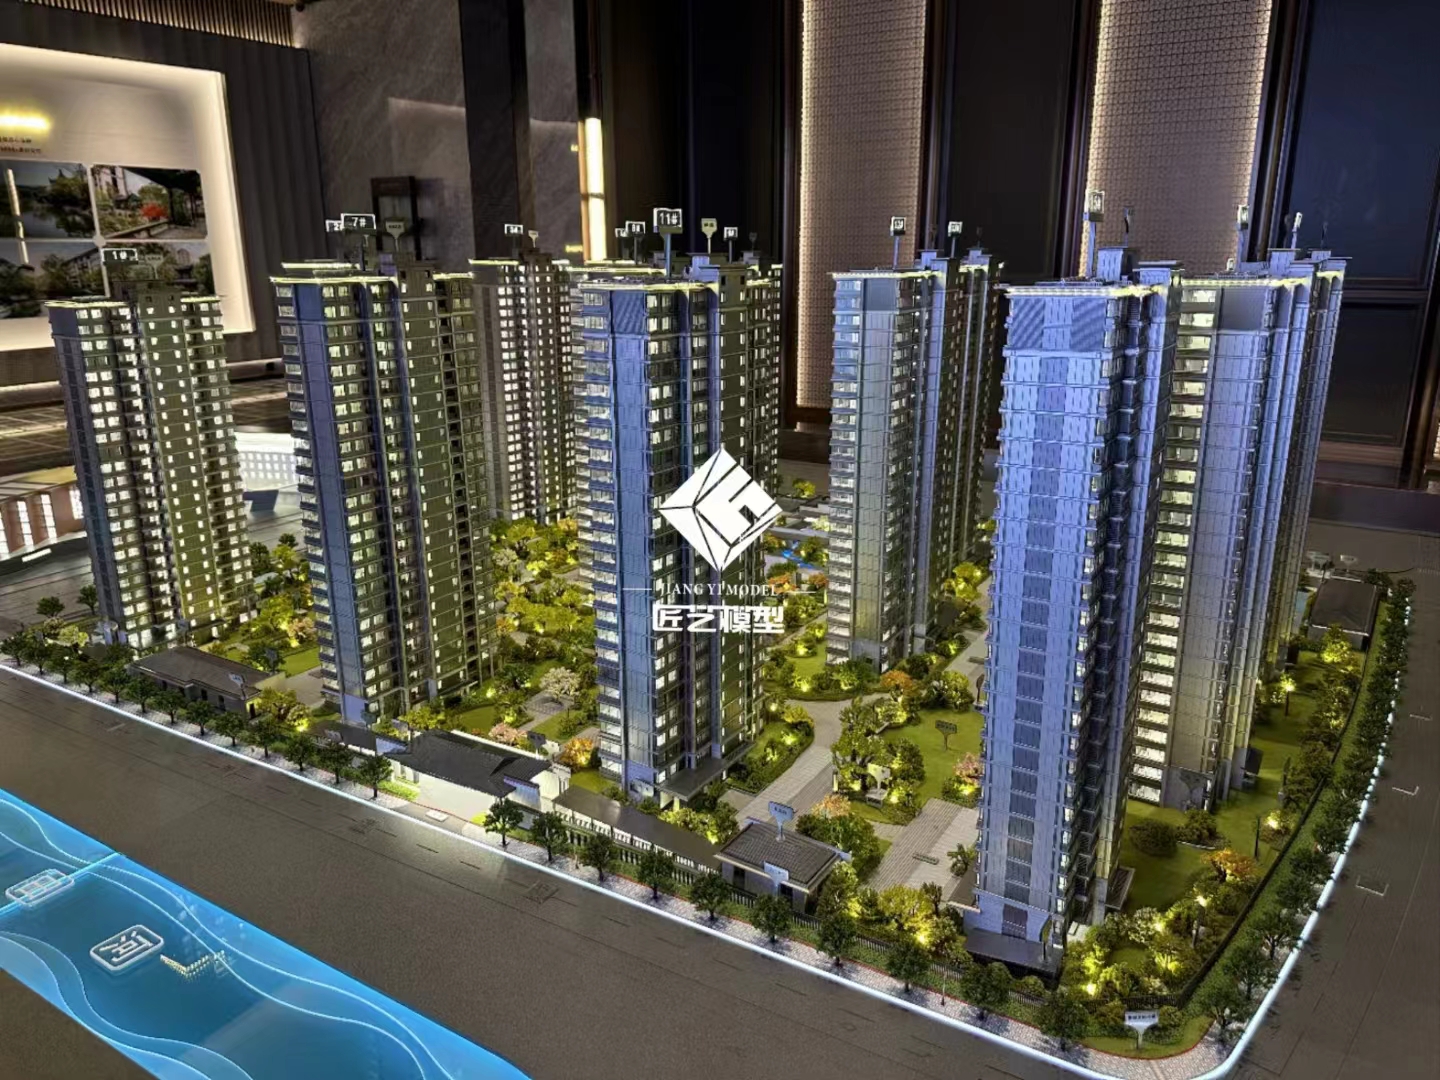 房產模型3D可視化技術的應用與發展趨勢